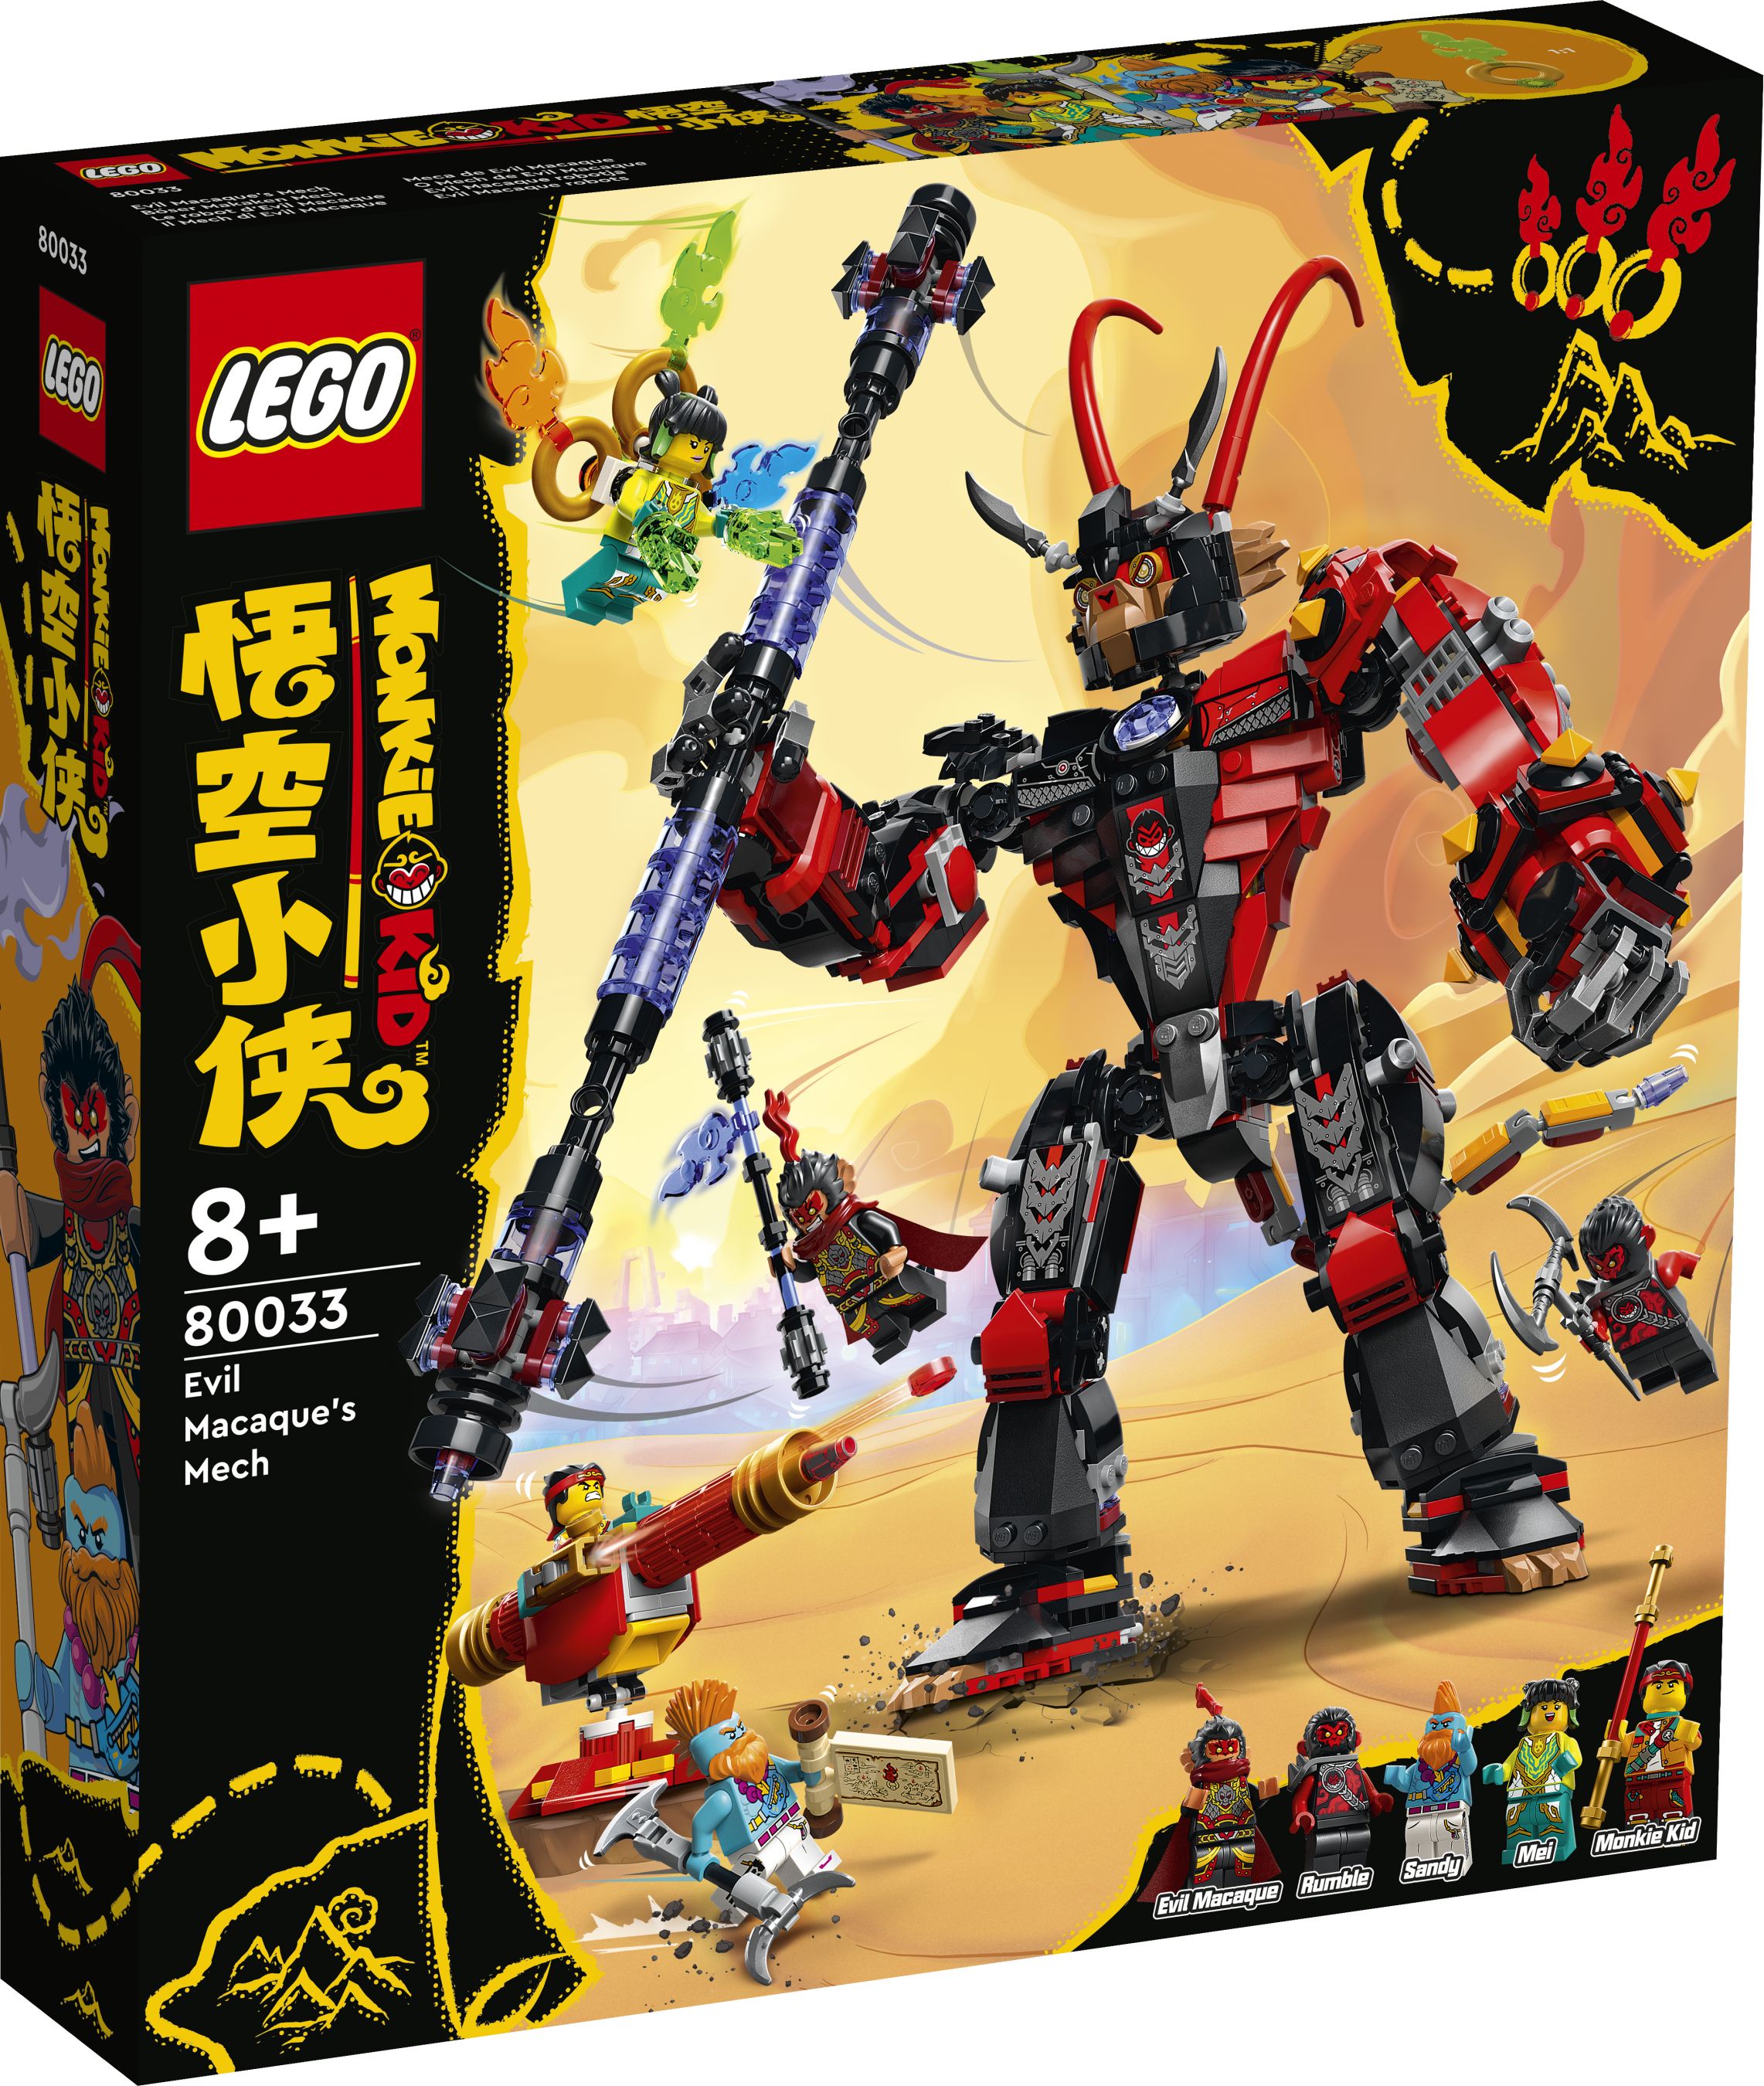 LEGO Monkie Kid 80033 Mech von Evil Macaque LEGO_80033_Box1_v29.jpg